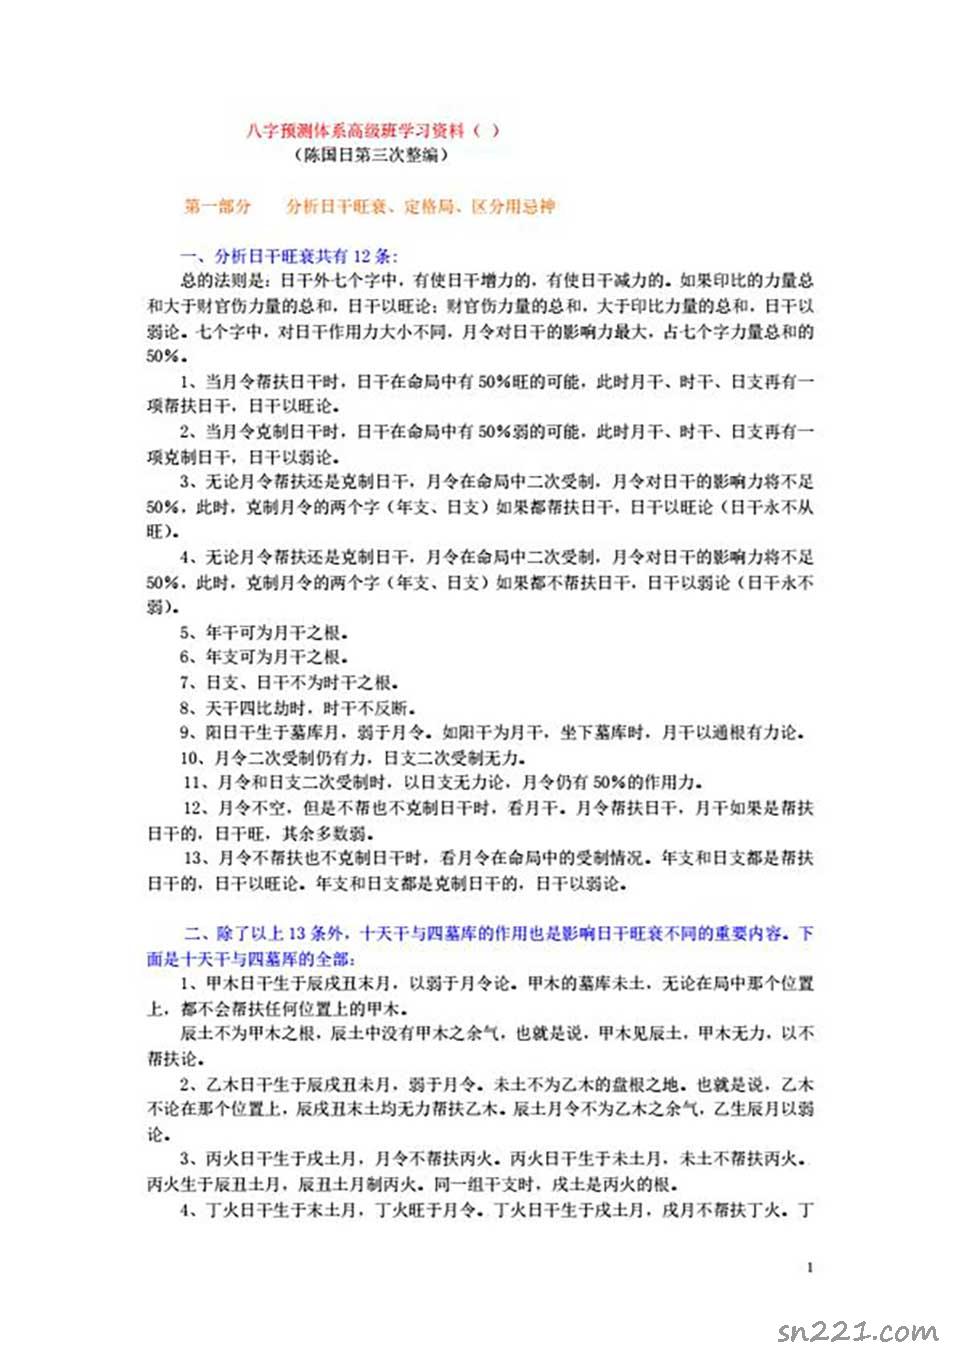 陳國日-新派的八字預測體系高級班學習資料92頁 .pdf